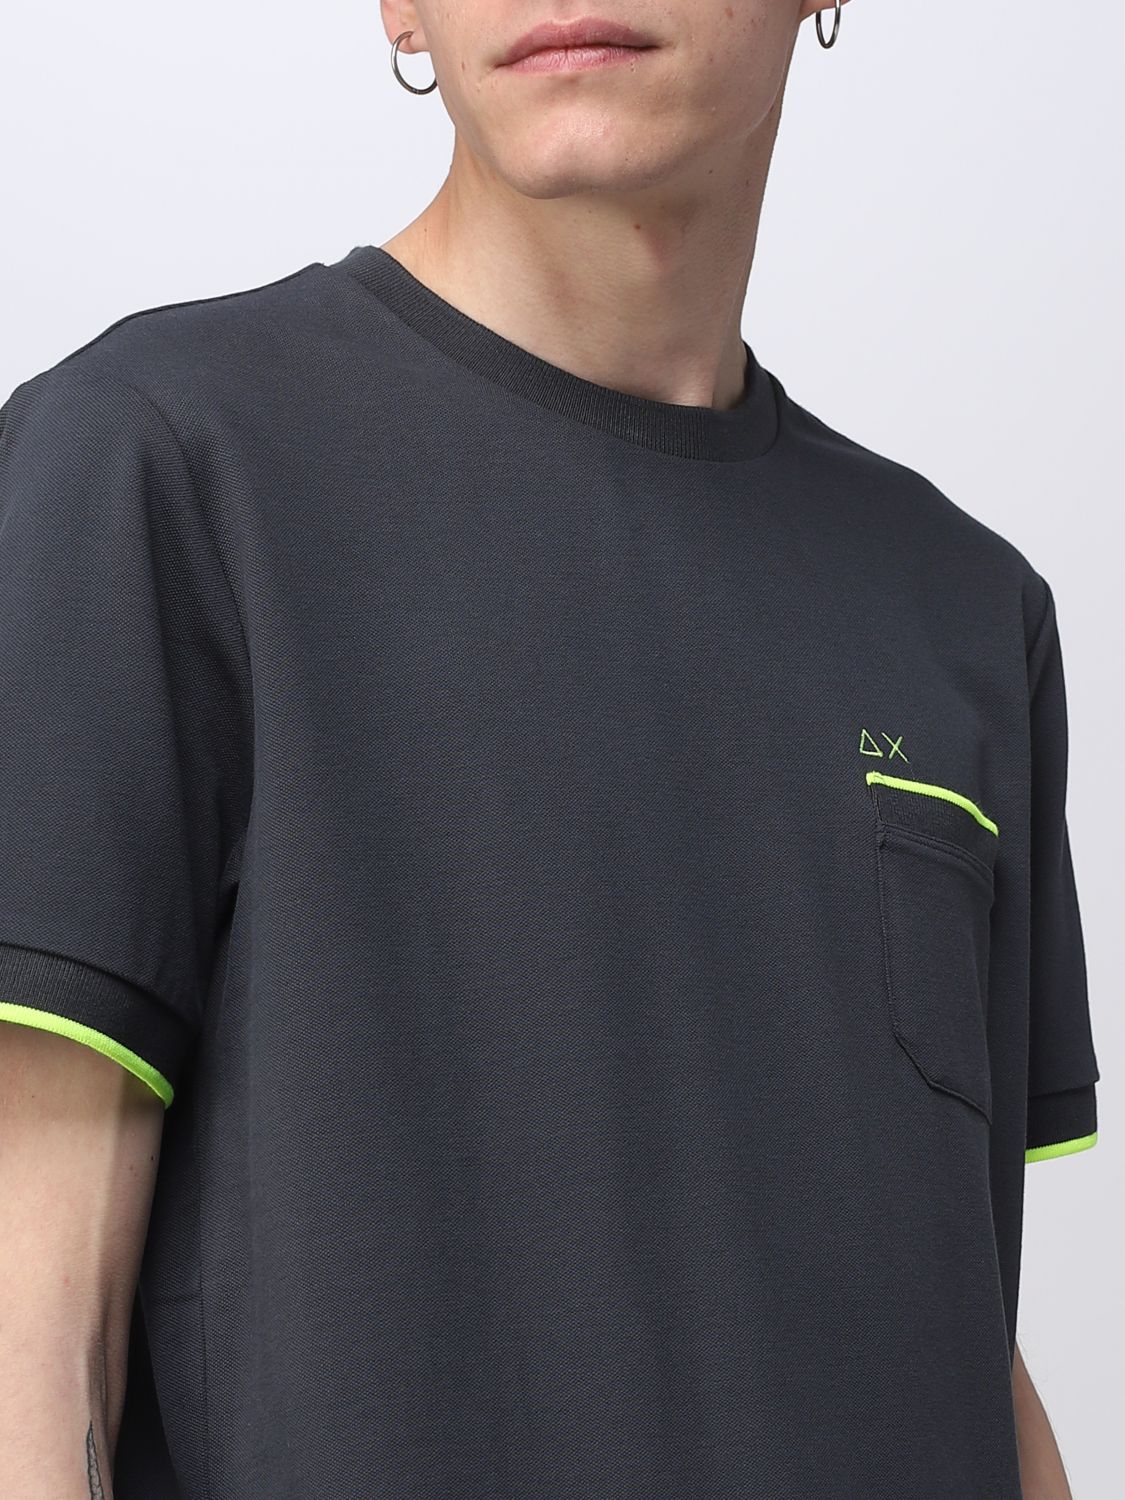 SUN 68: t-shirt for man - Charcoal | Sun 68 t-shirt T33121 online on ...